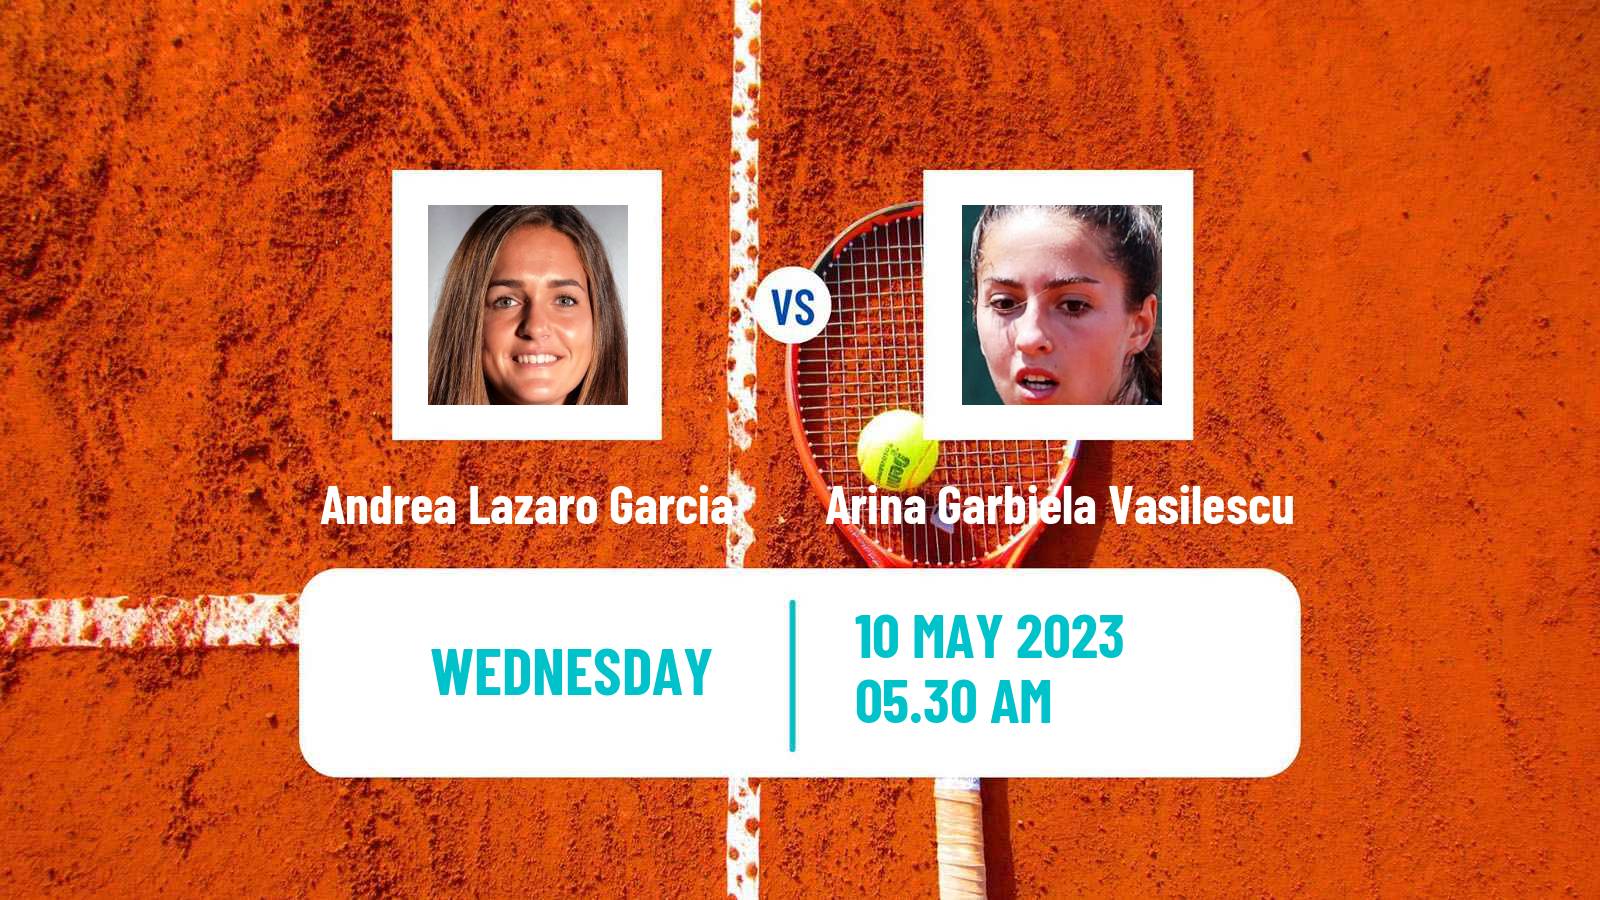 Tennis ITF Tournaments Andrea Lazaro Garcia - Arina Garbiela Vasilescu